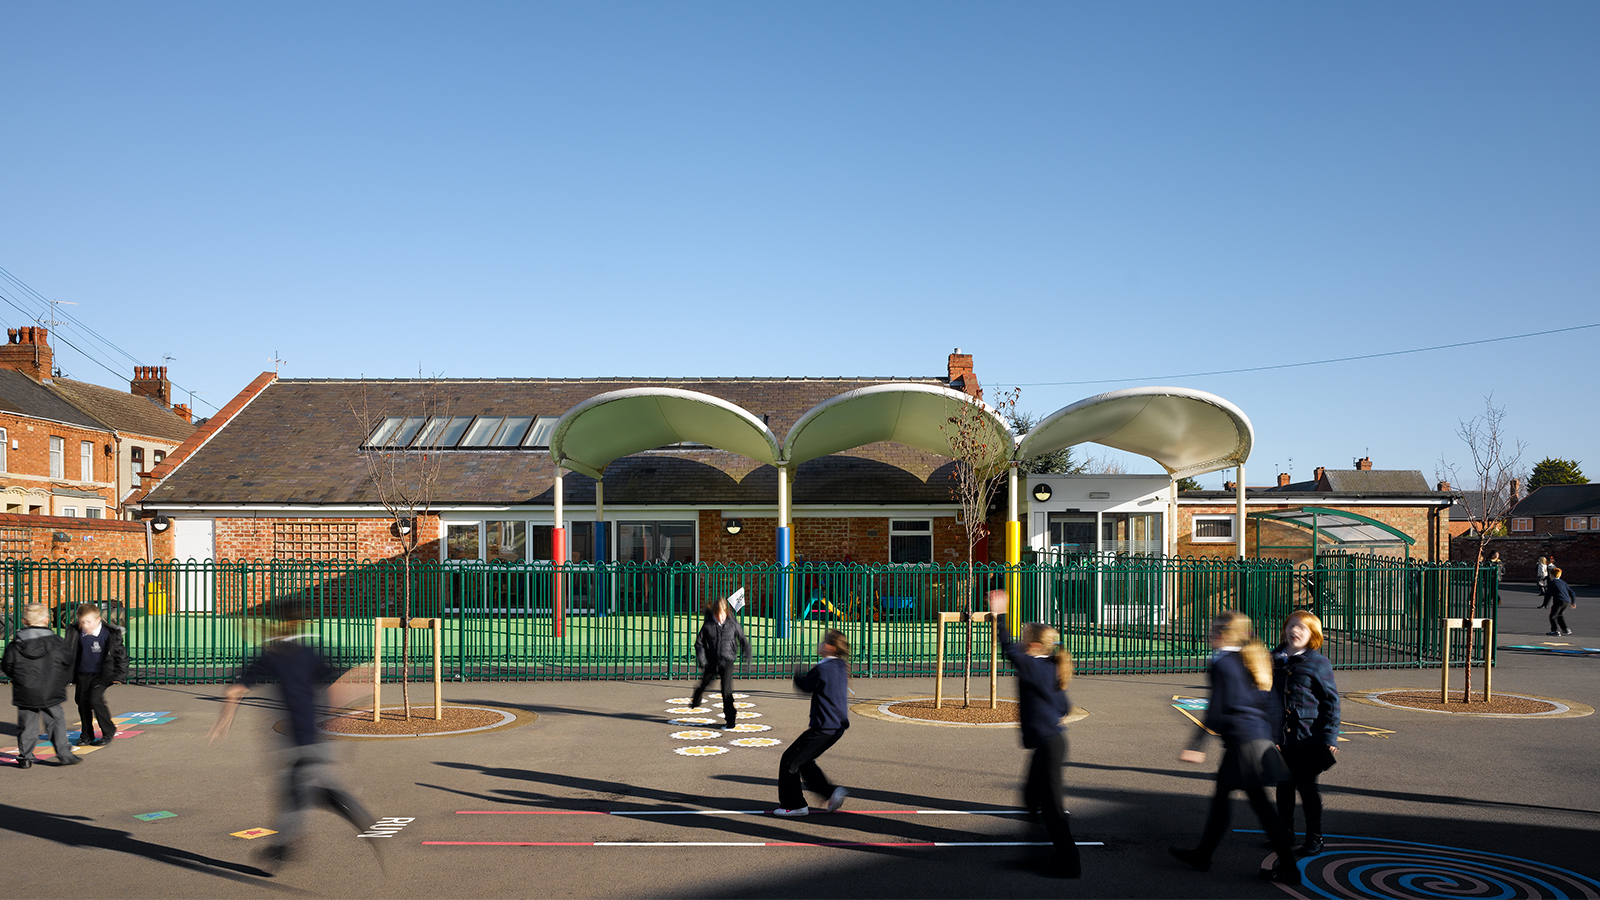 Kingsthorpe Primary School